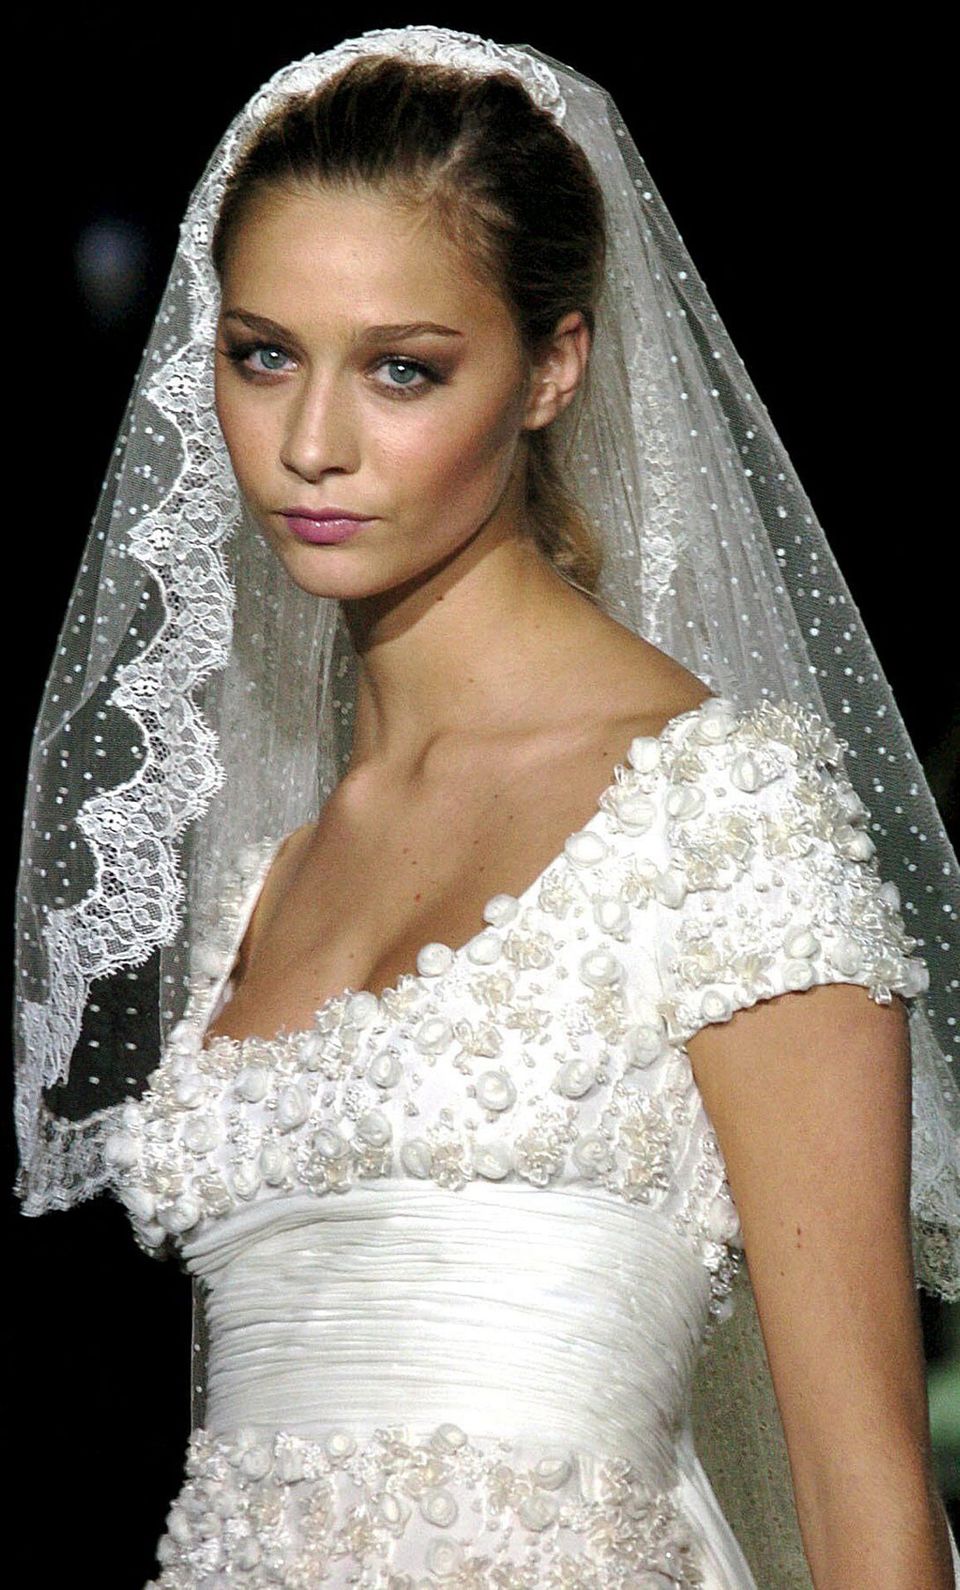 2005 modelte Beatrice Borromeo für die Brautmodenkollektion von Valentino. Für ihre baldige Hochzeit konnte sie da schon fleißig üben.